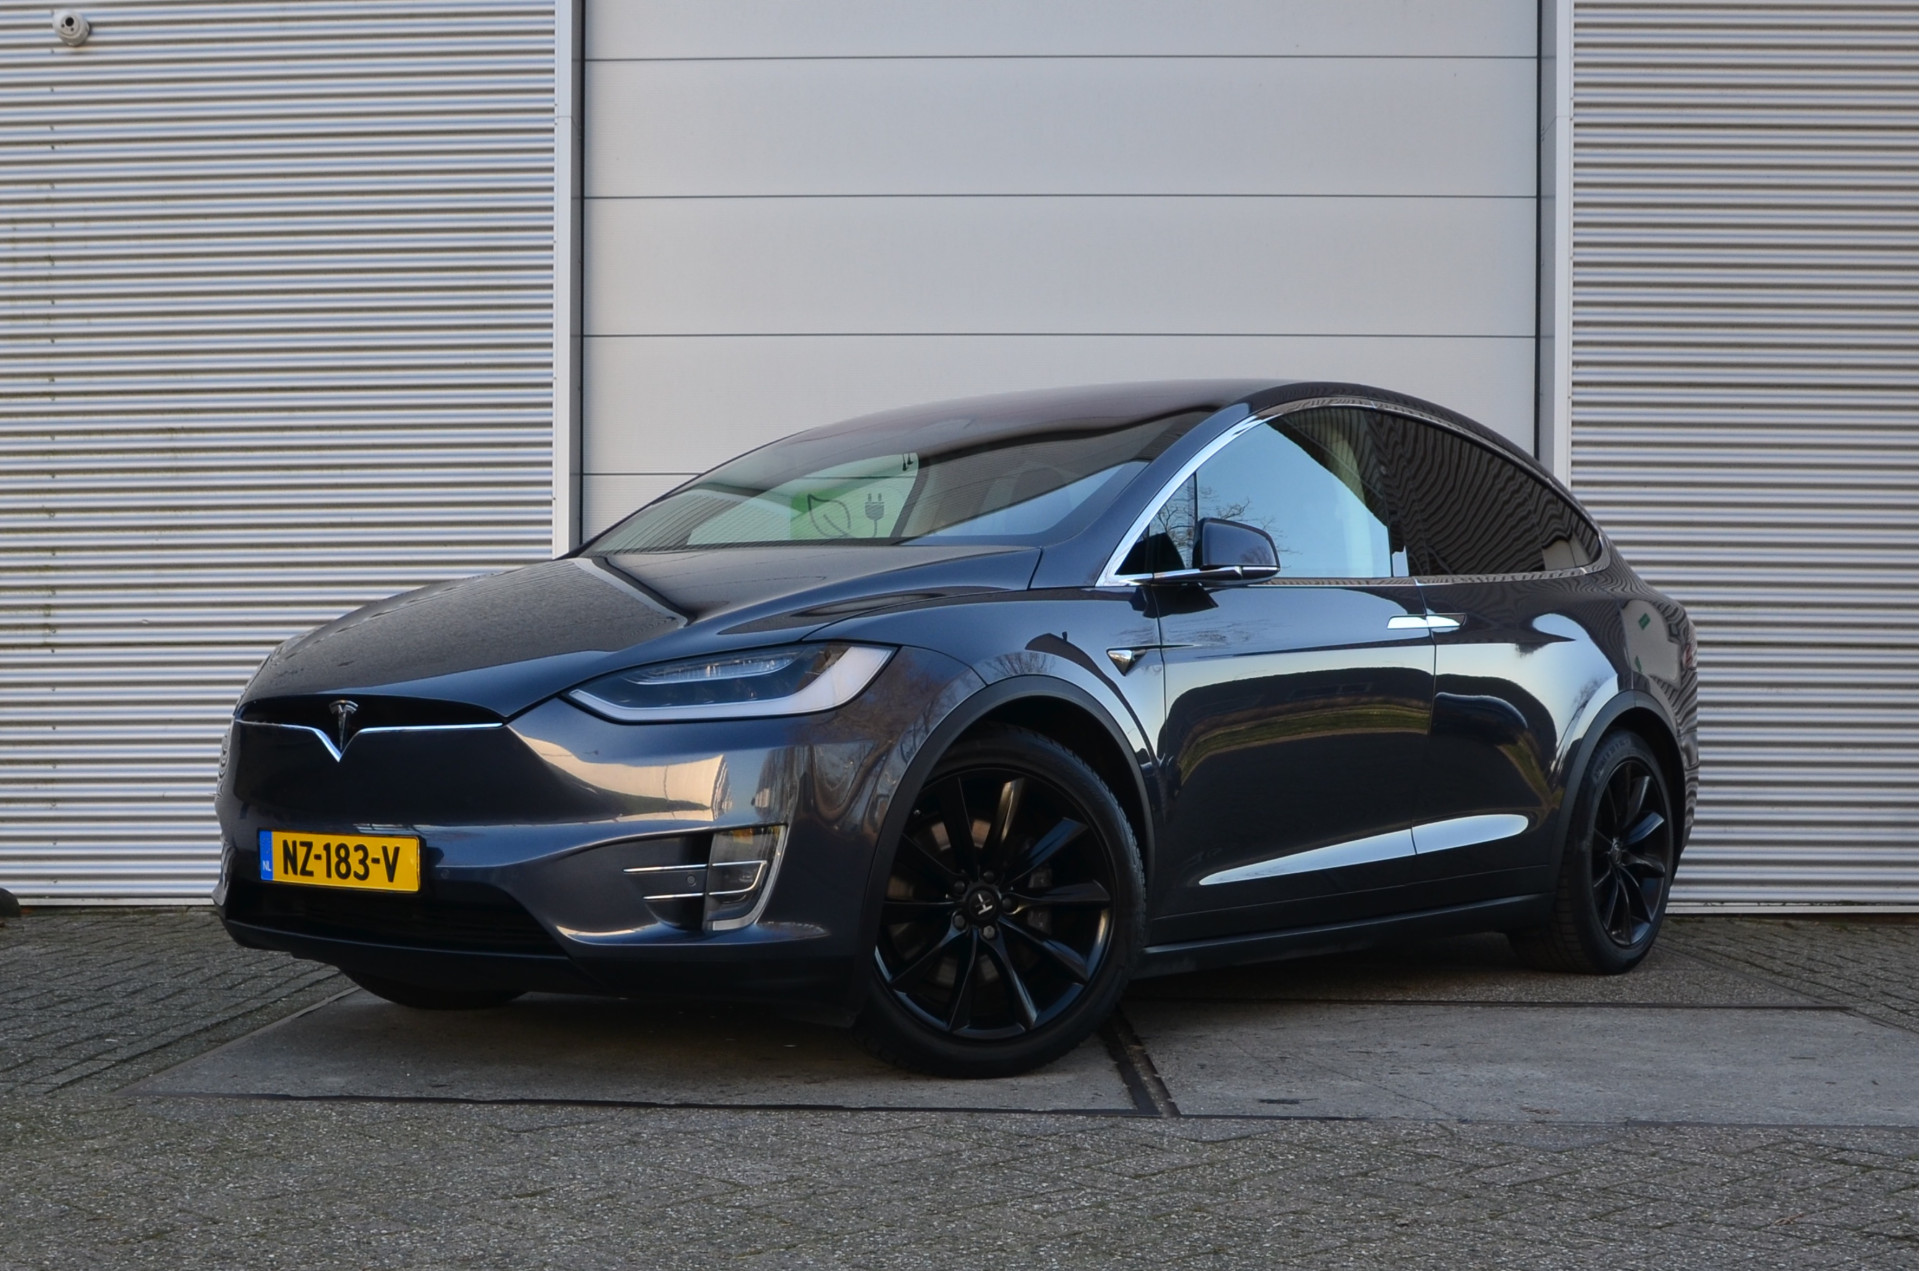 Tesla Model X 100D 6p. AutoPilot3.0+FSD, MARGE rijklaar prijs bij viaBOVAG.nl